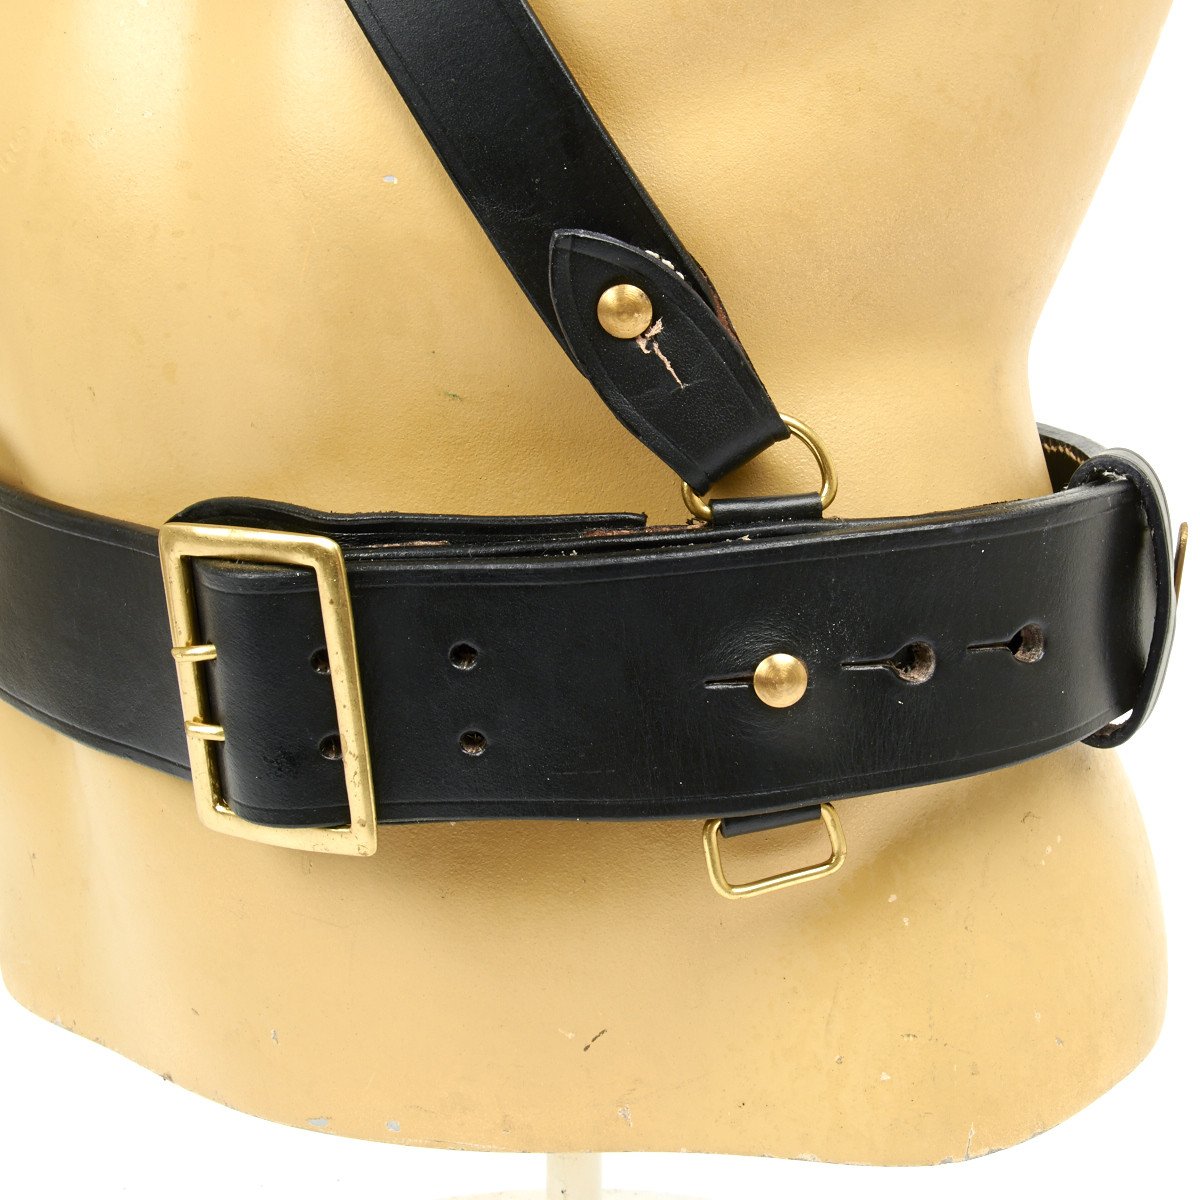 Sam Browne Belts with Right Shoulder Strap (for left hand pistol